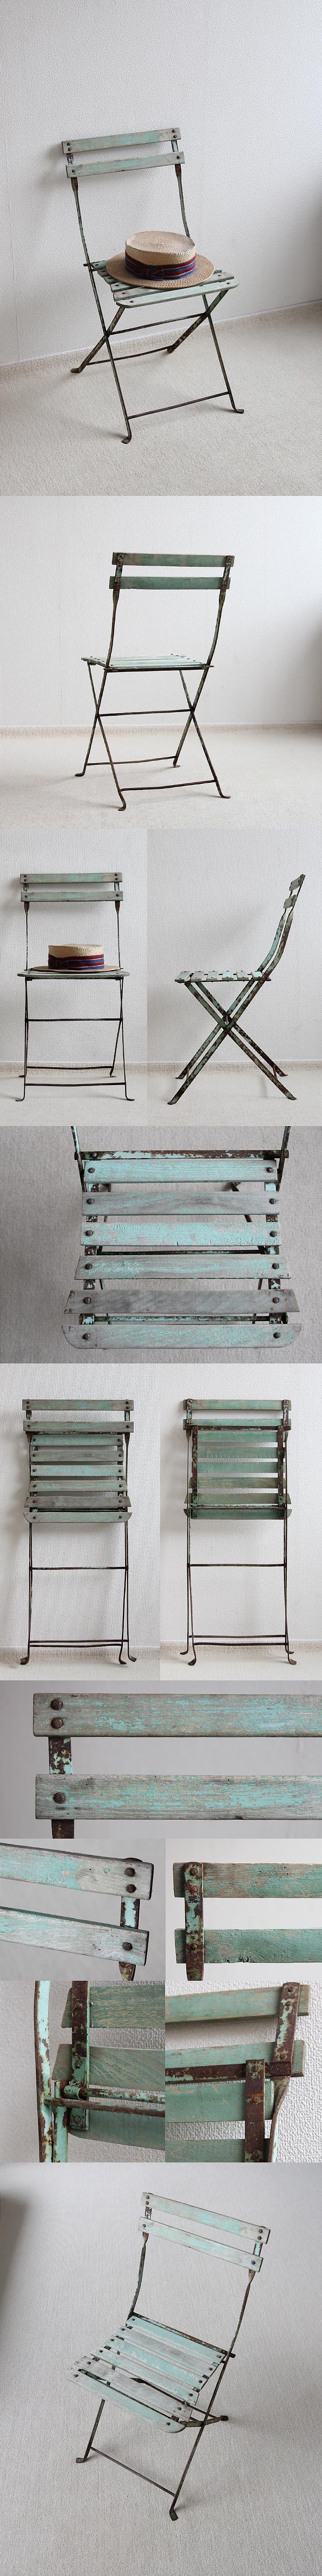 フランス アンティーク フォールディングチェア 木製椅子 折りたたみ式 ペイント家具「ガーデンチェア」P-391